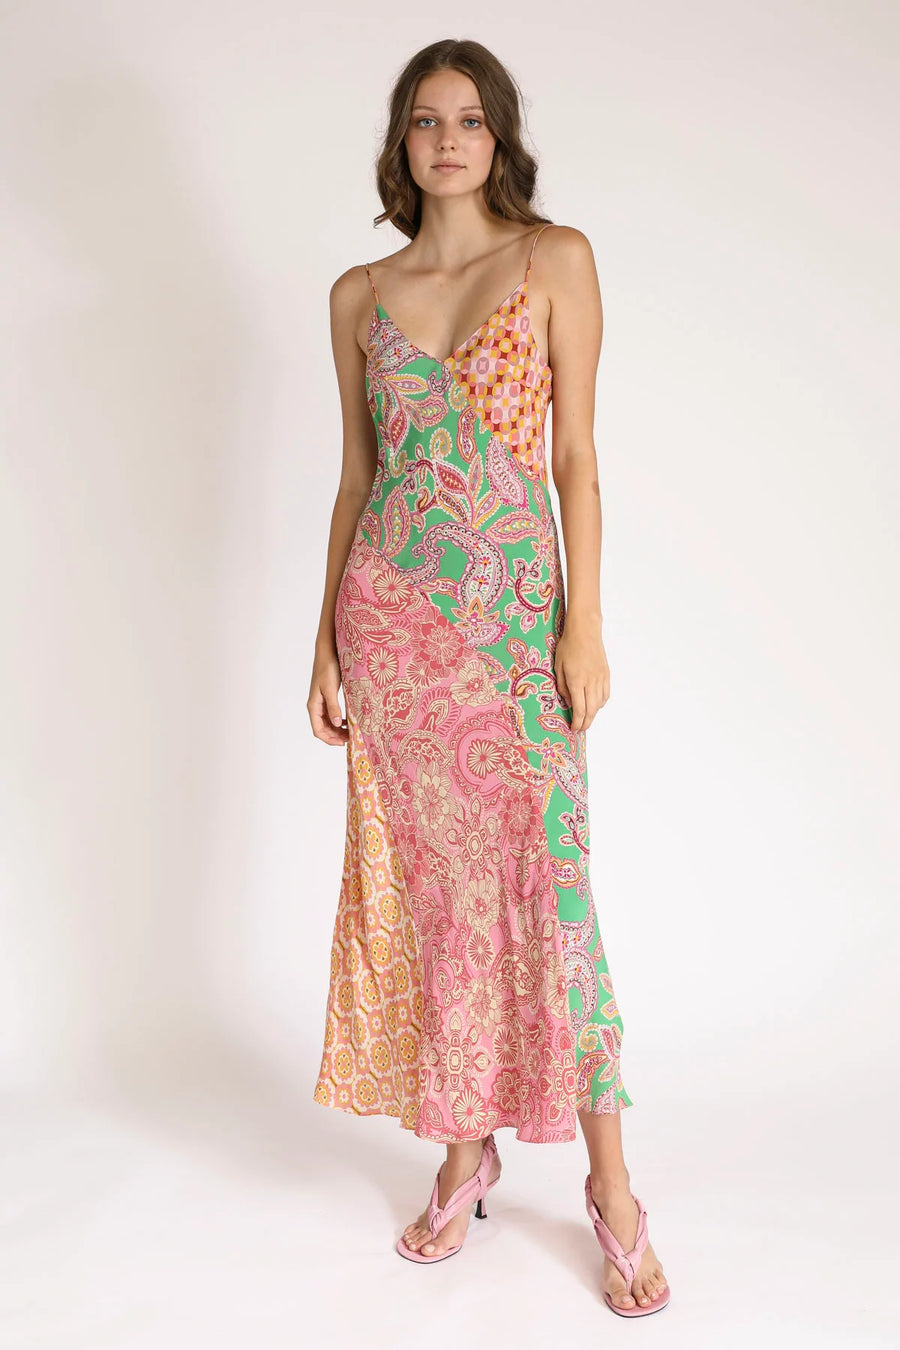 Kachel Stefani Dress - Multi FINAL SALE